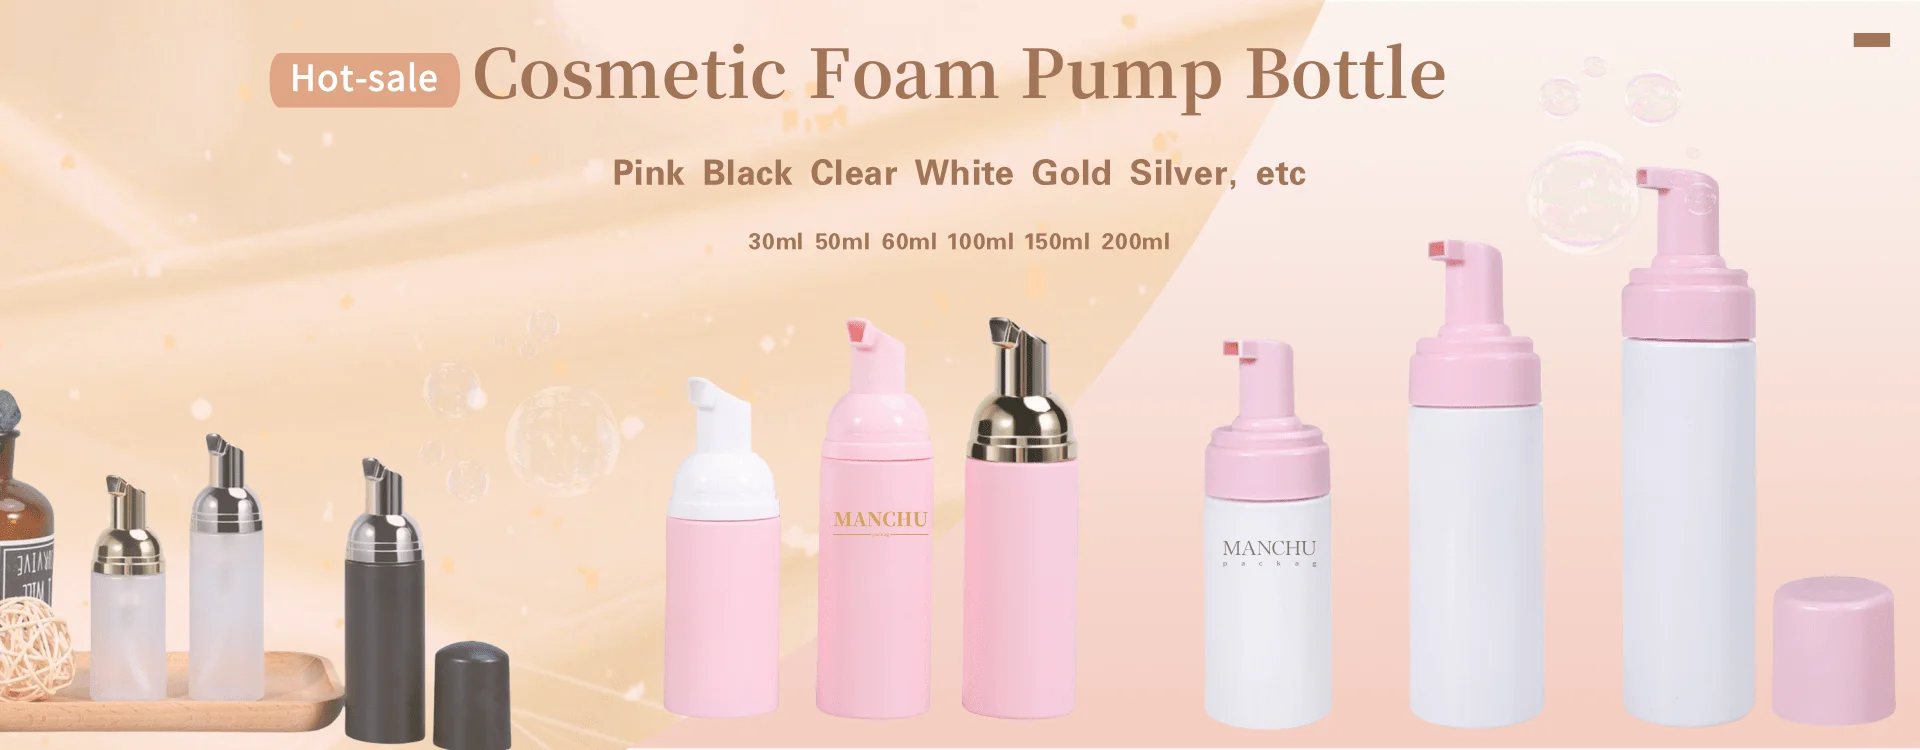 Foam pump bottle